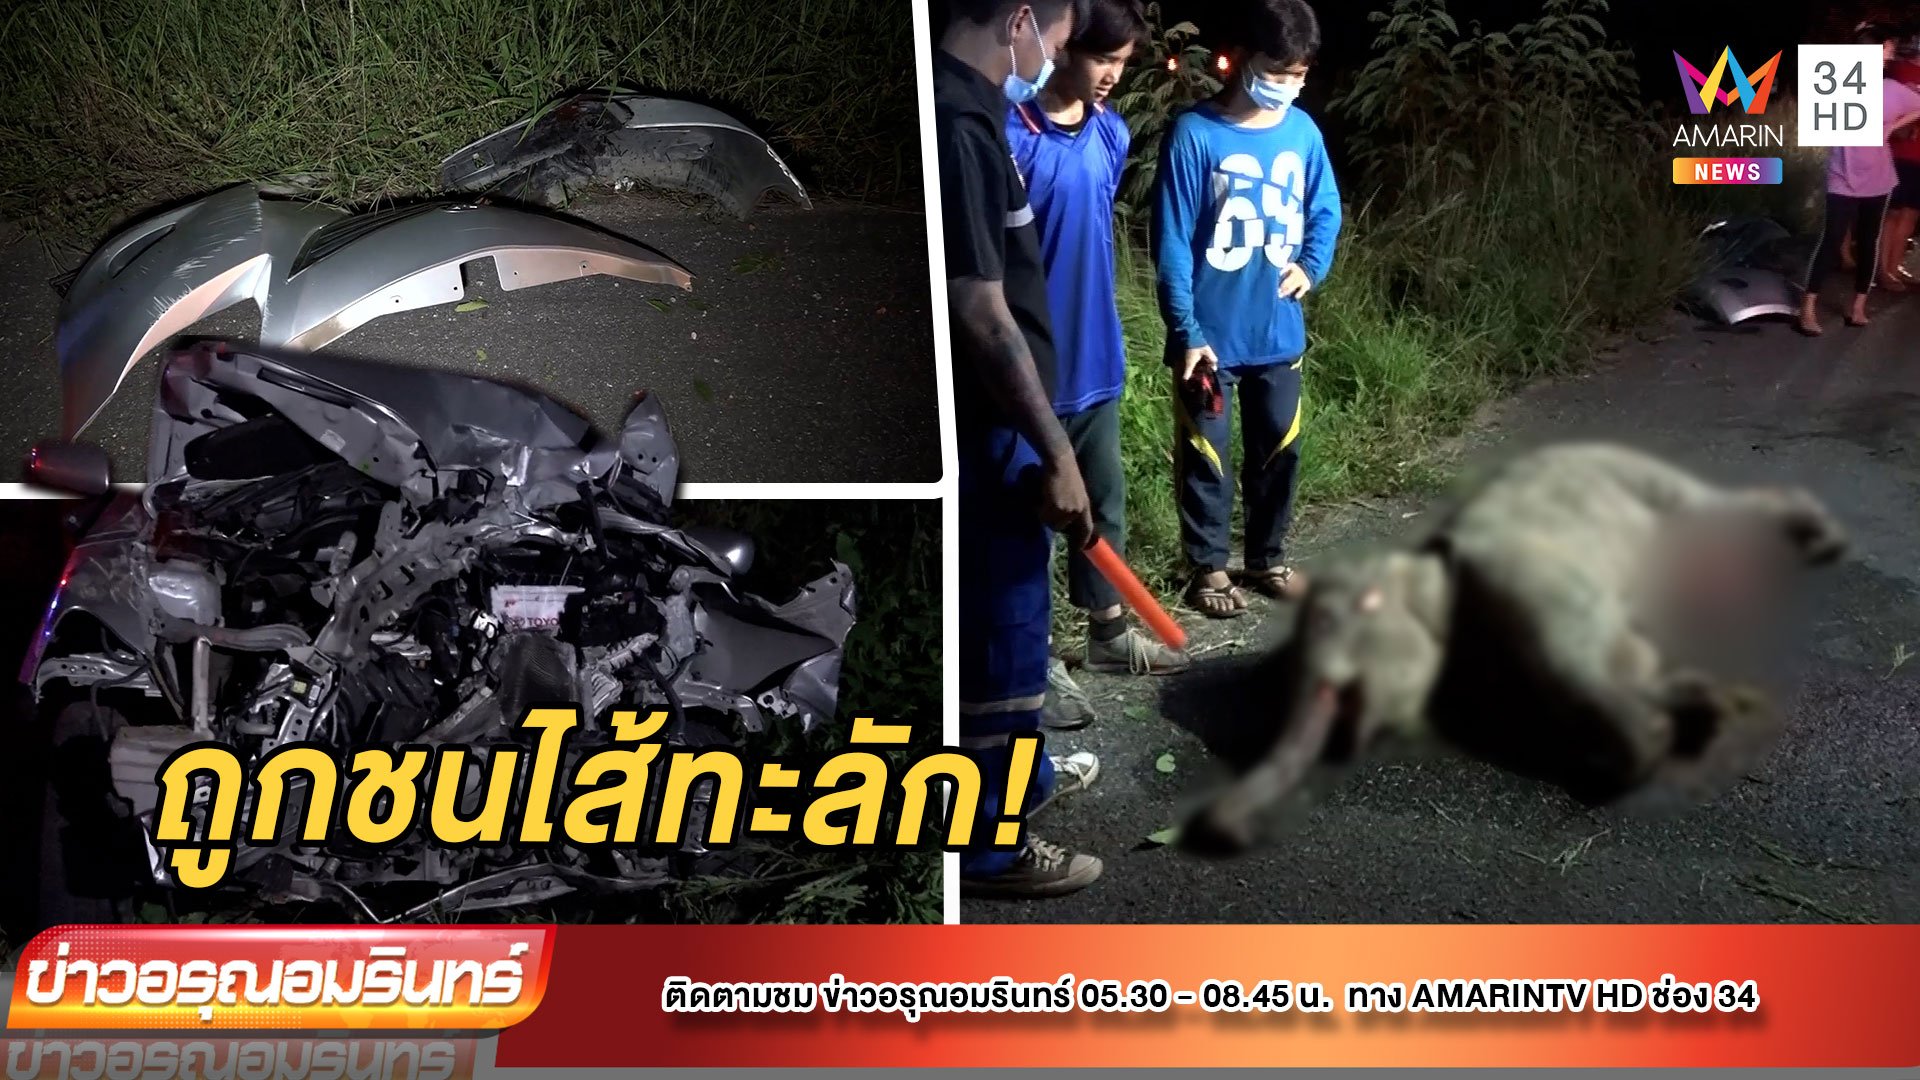 สลด! ช้างน้อยเจอชนไส้ทะลักริมถนน คนขับโหดชิ่งหนีหายวับ | ข่าวอรุณอมรินทร์ | 19 ต.ค. 64 | AMARIN TVHD34